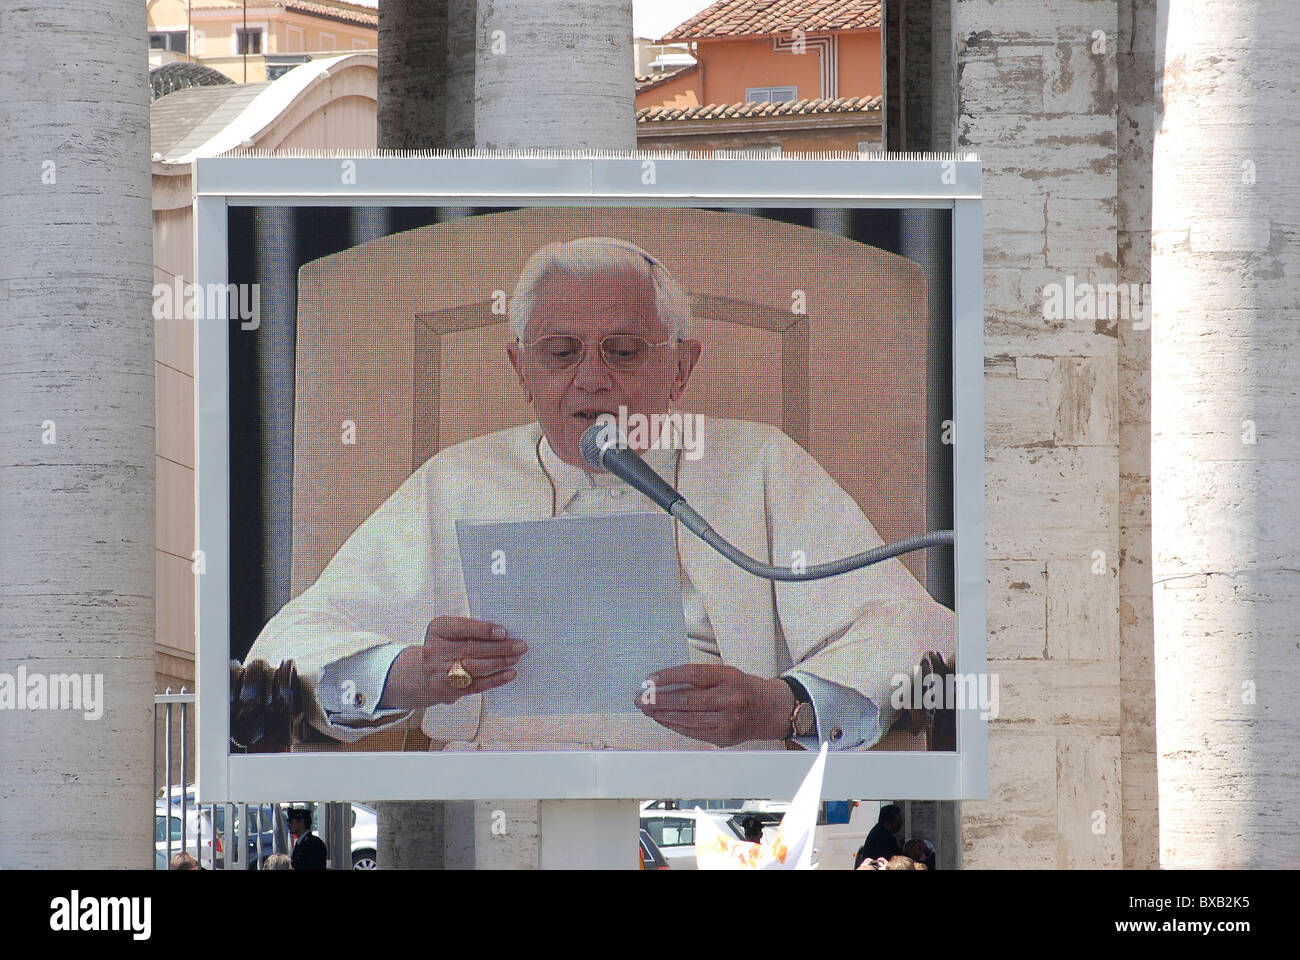 Benedickt XVI Pape sur écran géant à Saint Pierre, Vatican, Rome, Italie Banque D'Images